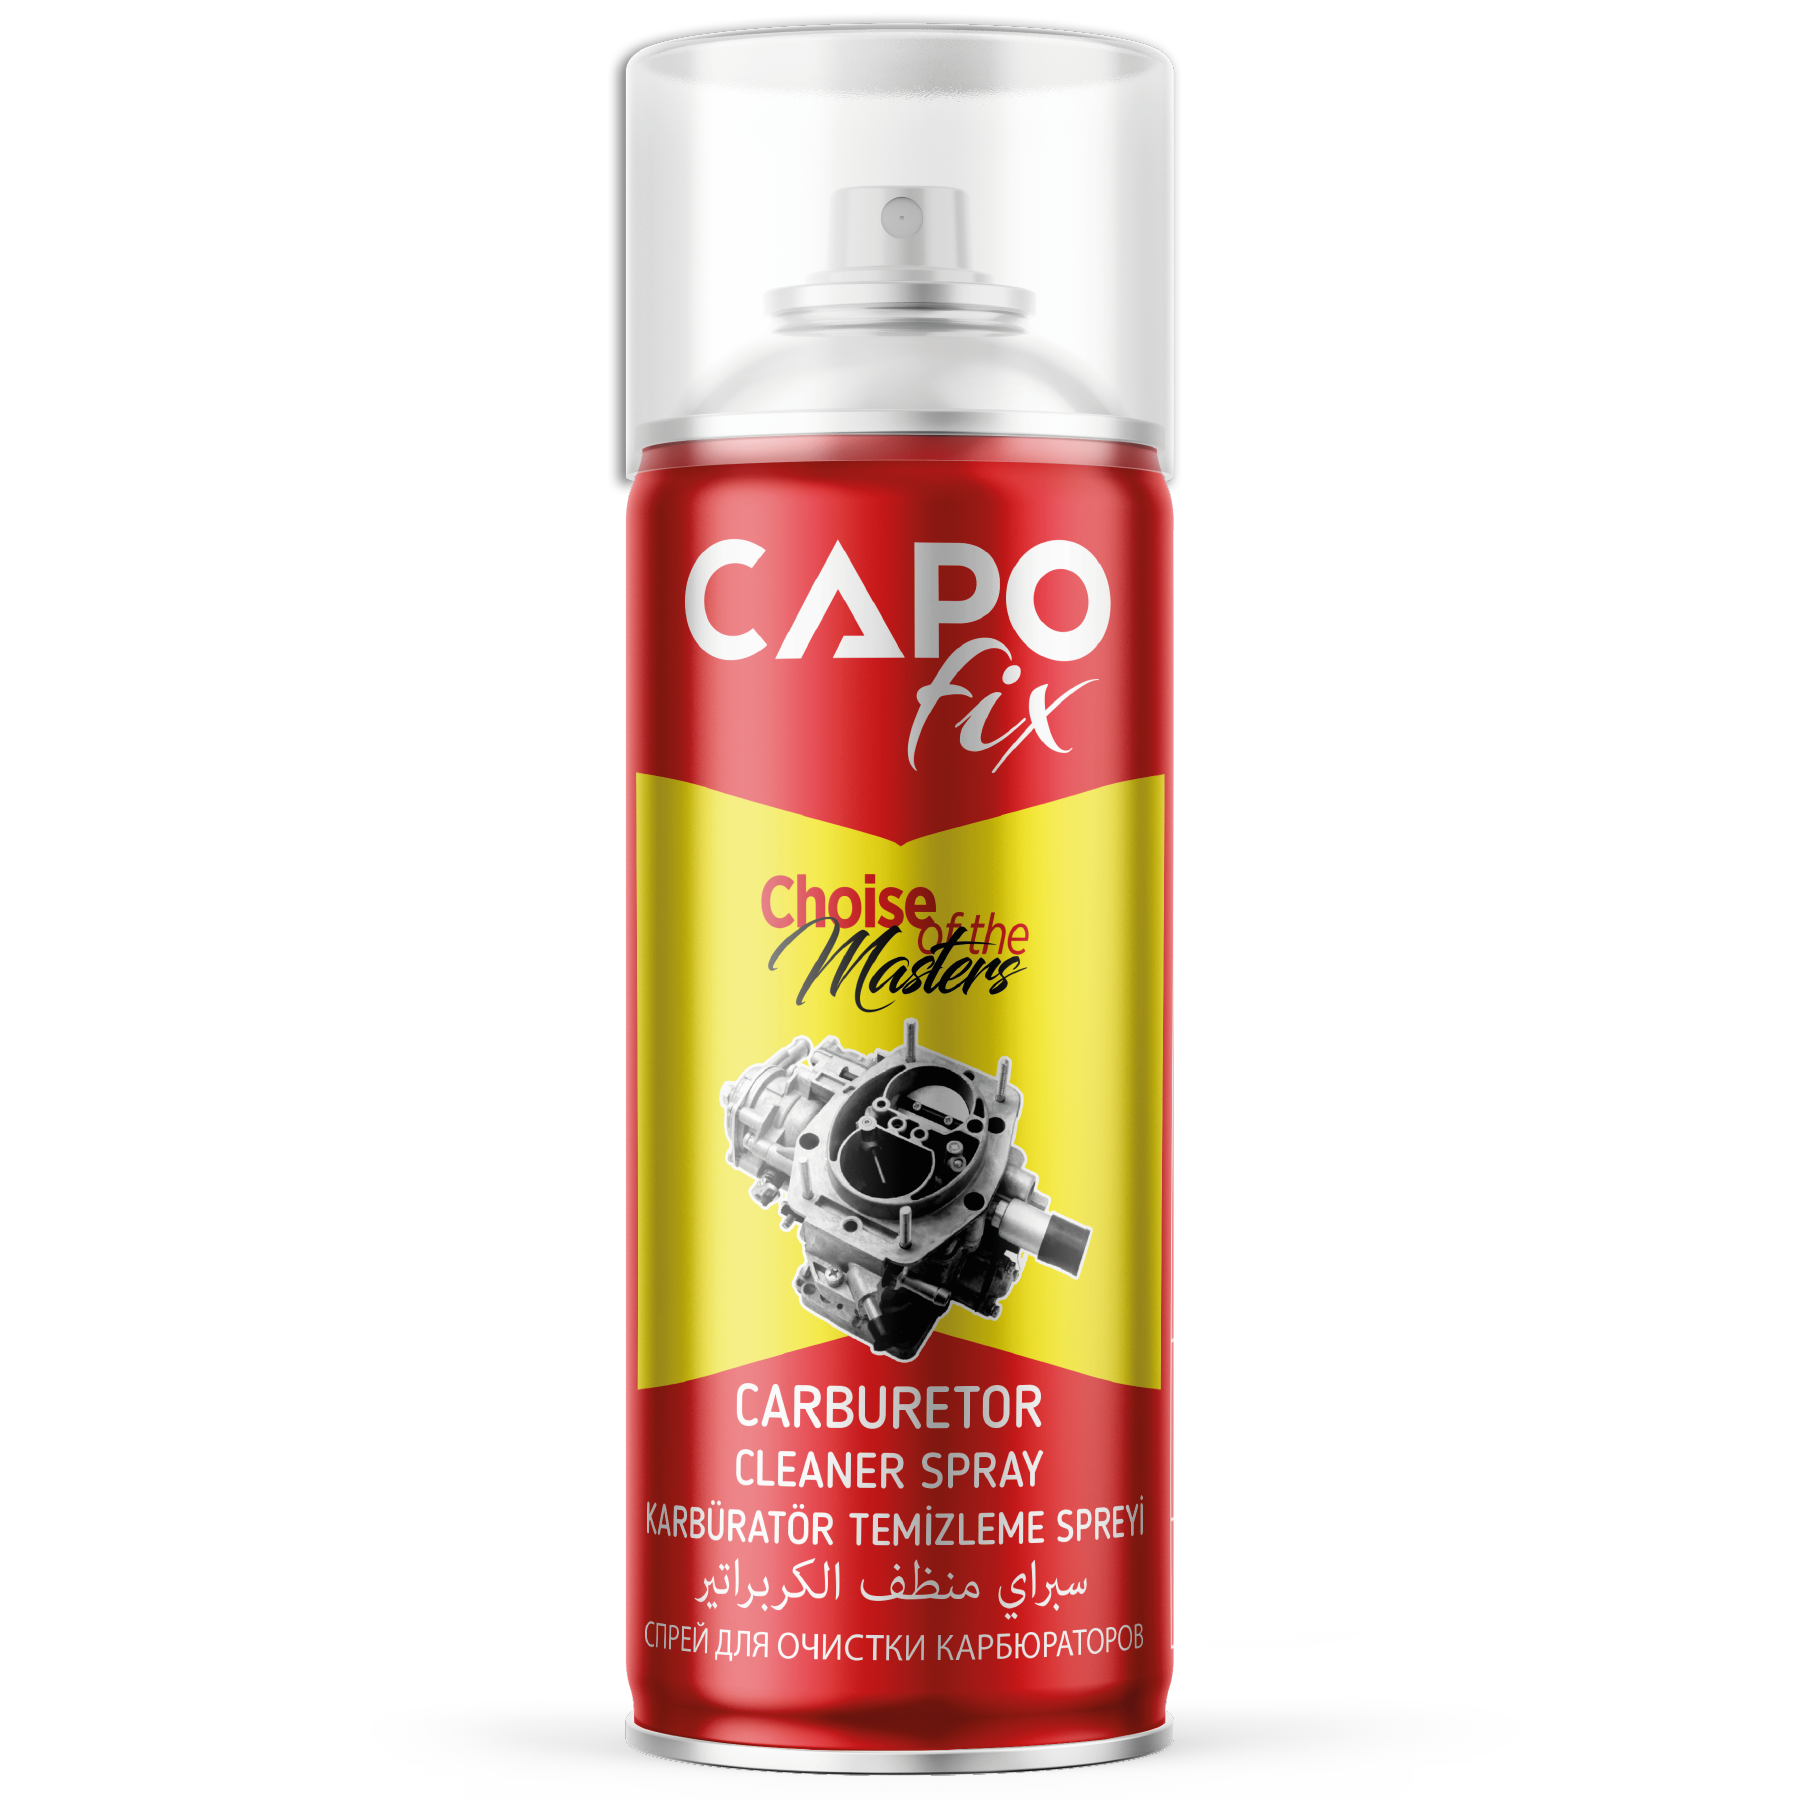 .CAPO fix Carburetor Cleaner Spray.